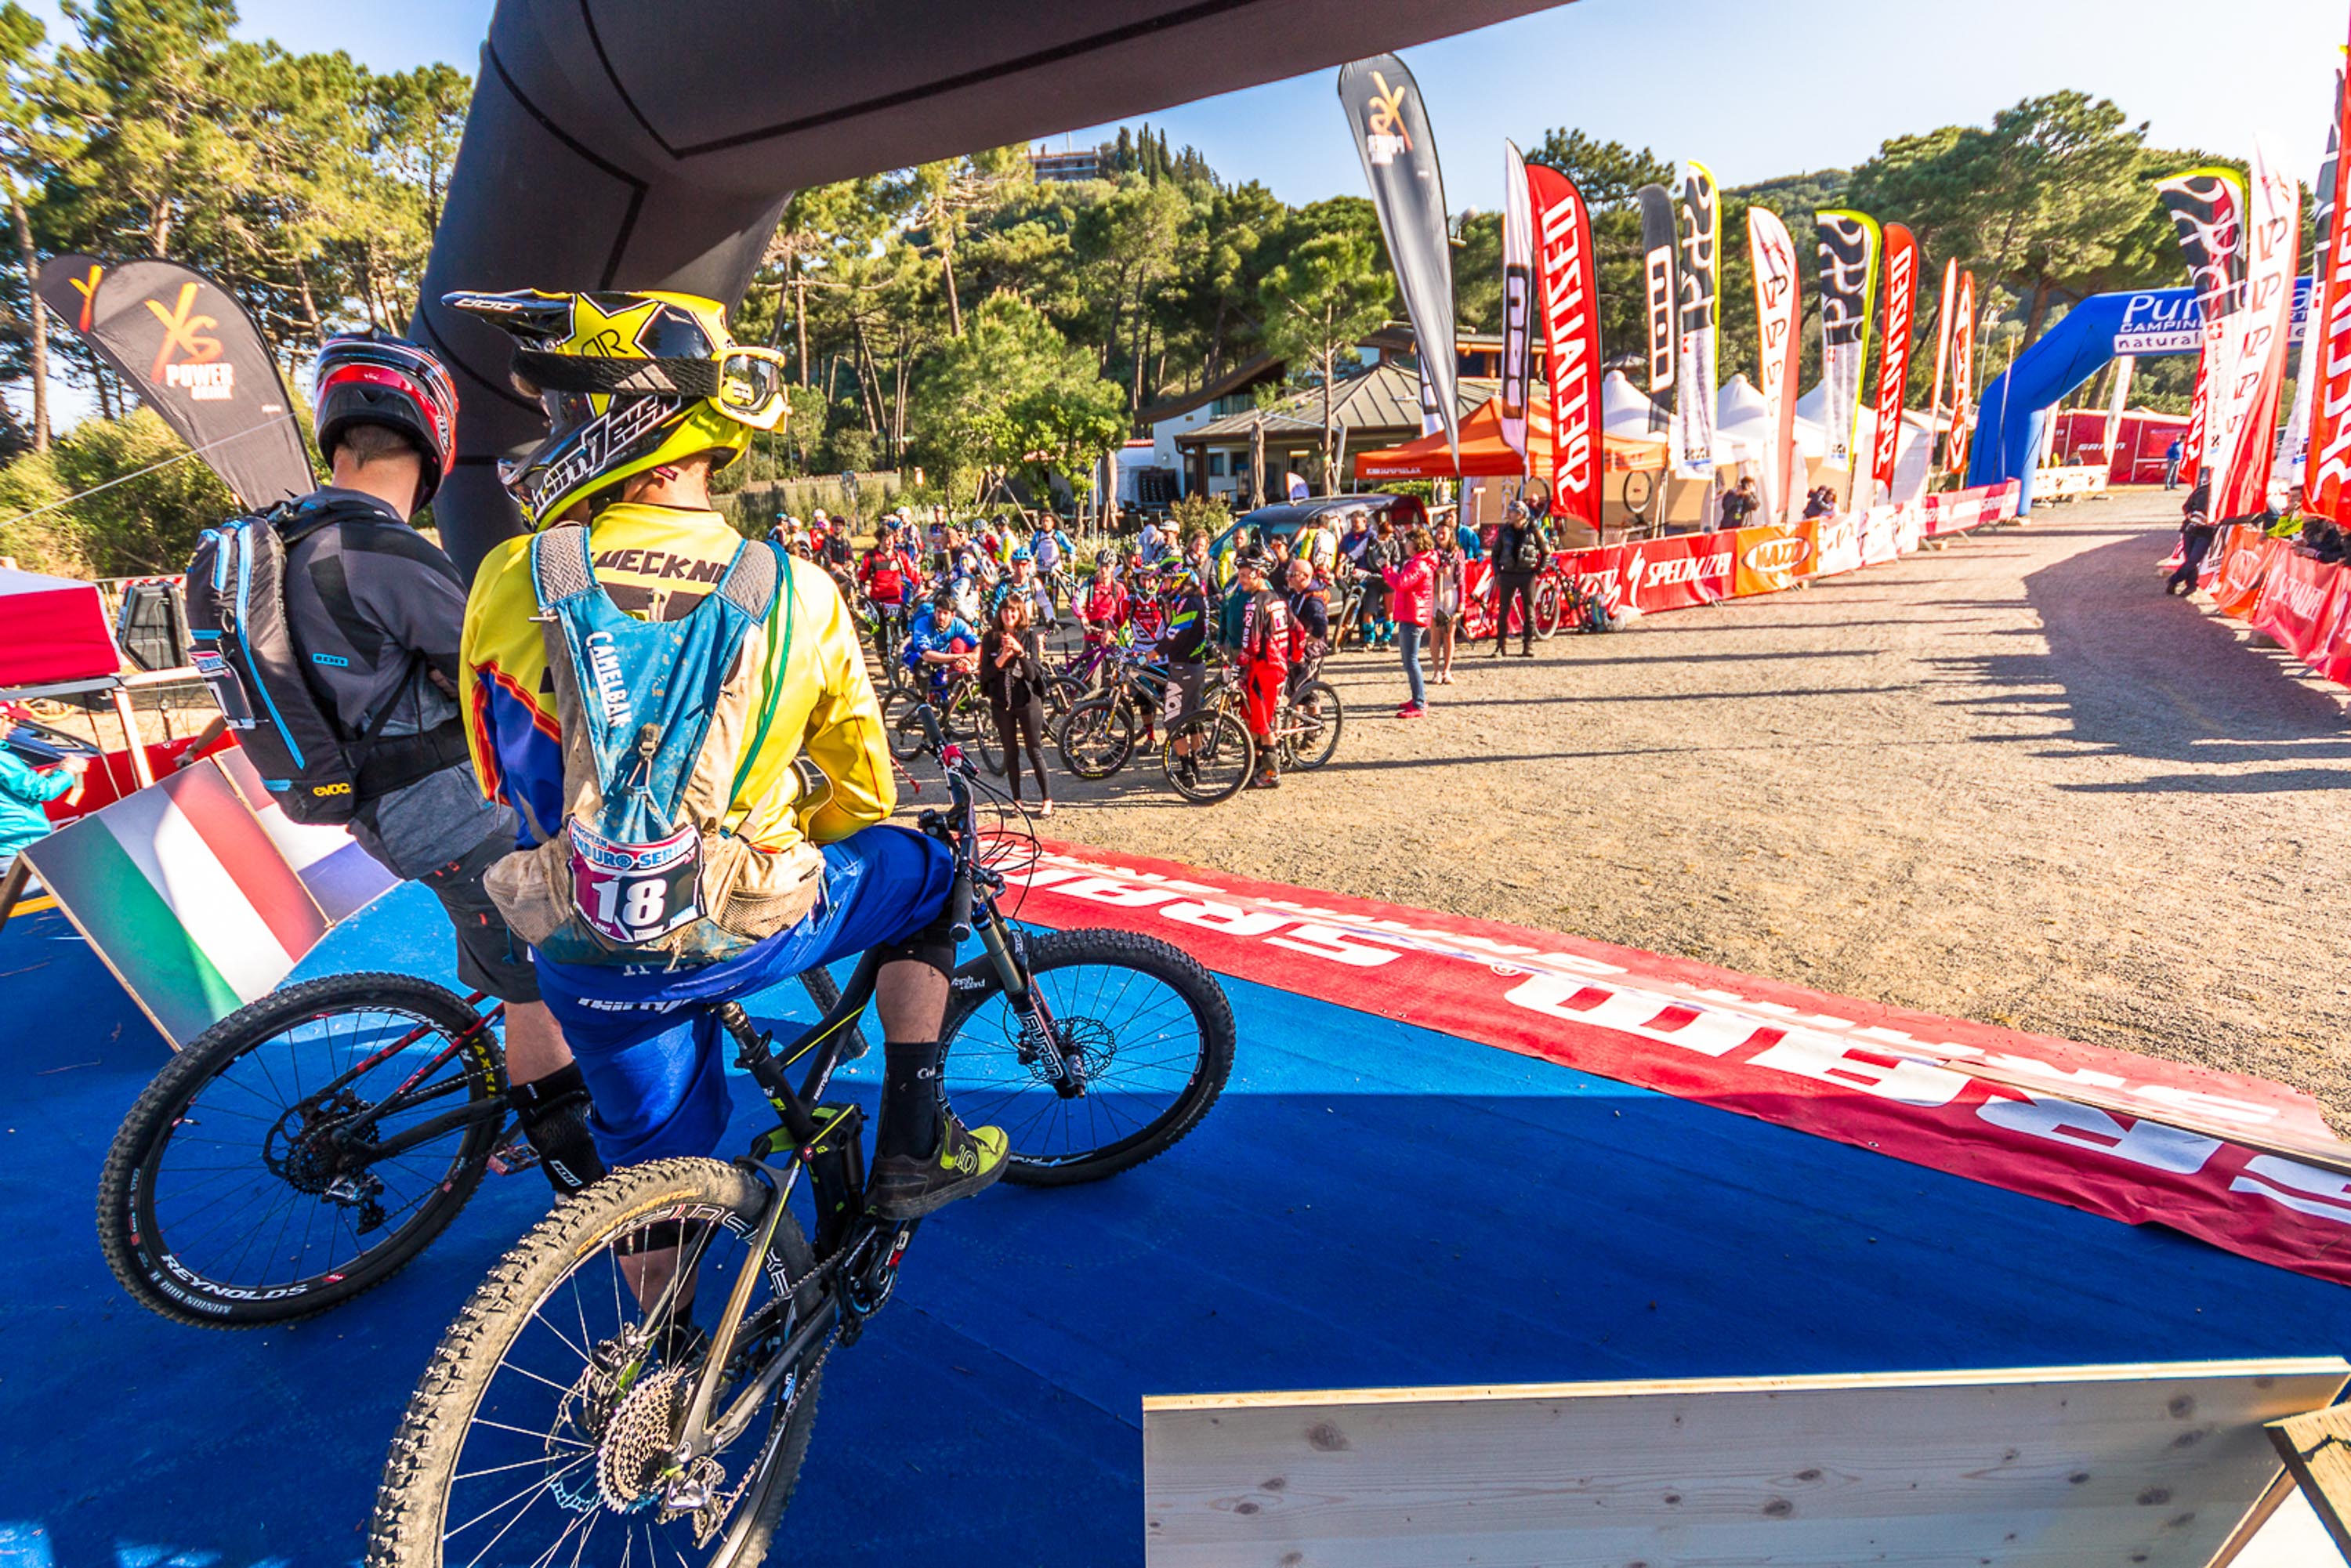 Europejski cykl Enduro Series rozpocznie sezon 2015 w wyjątkowym miejscu Punta Ala!